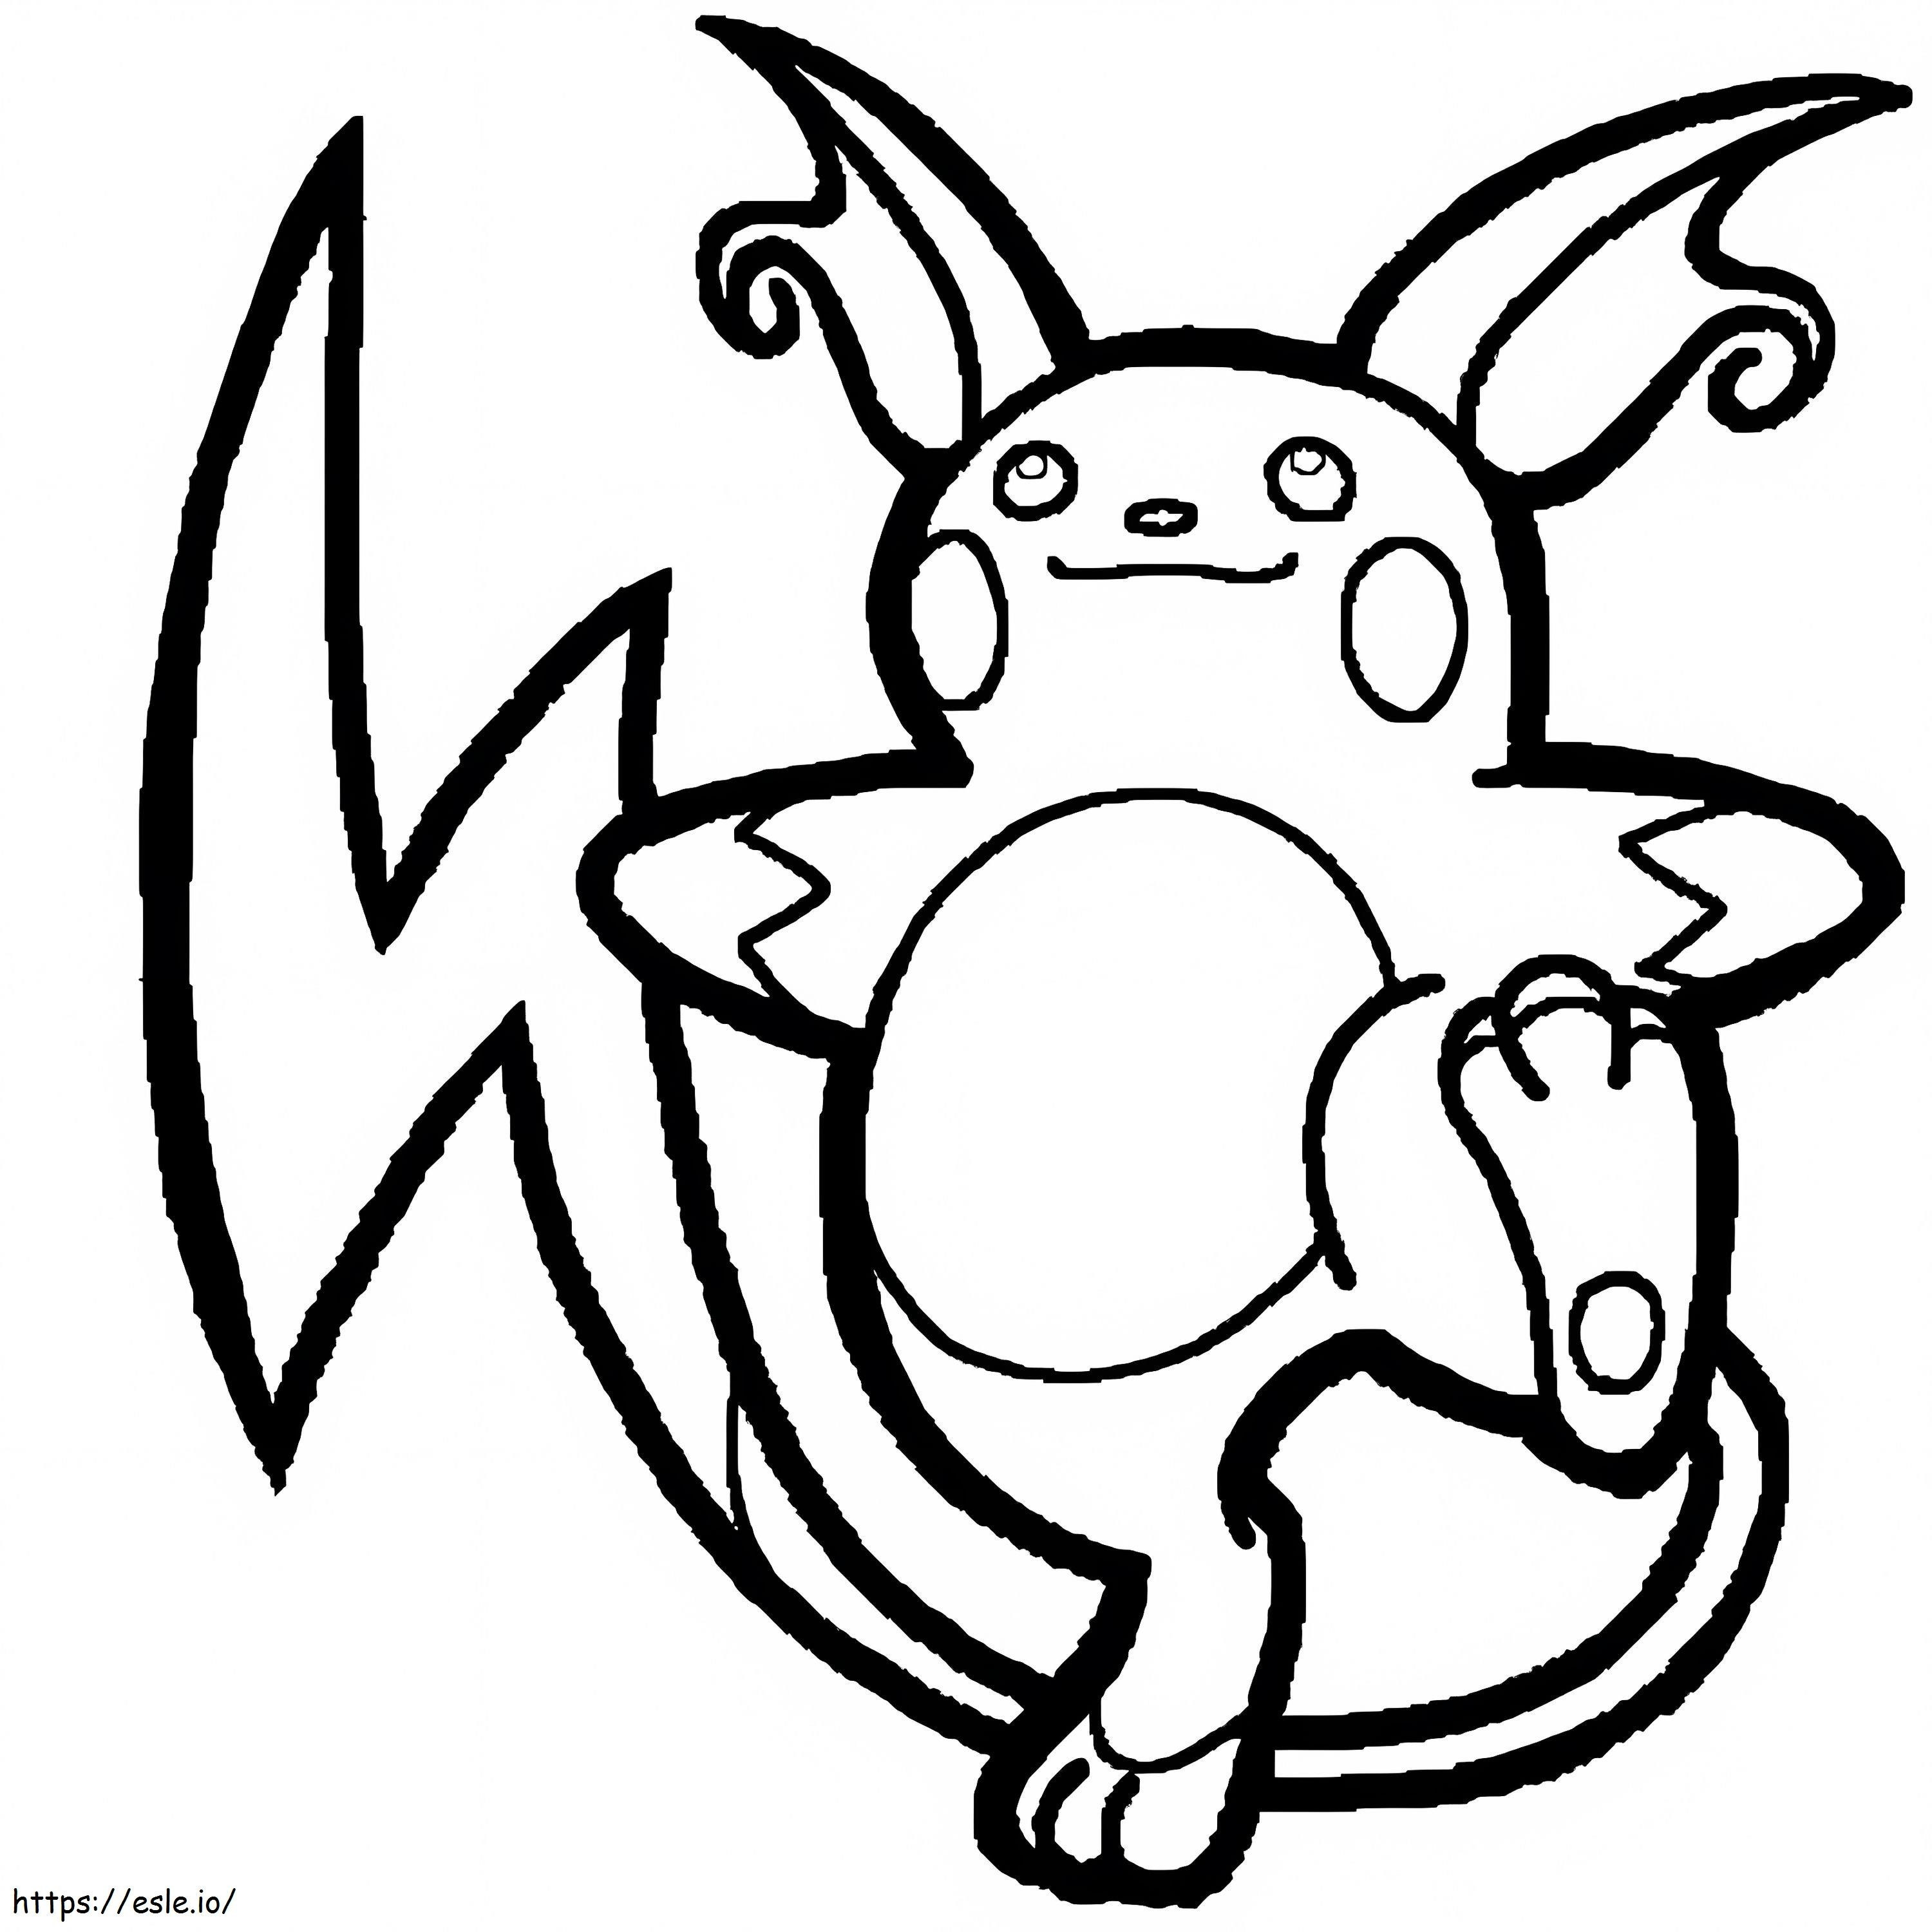 Coloriage Pokemon Raichu 1 à imprimer dessin